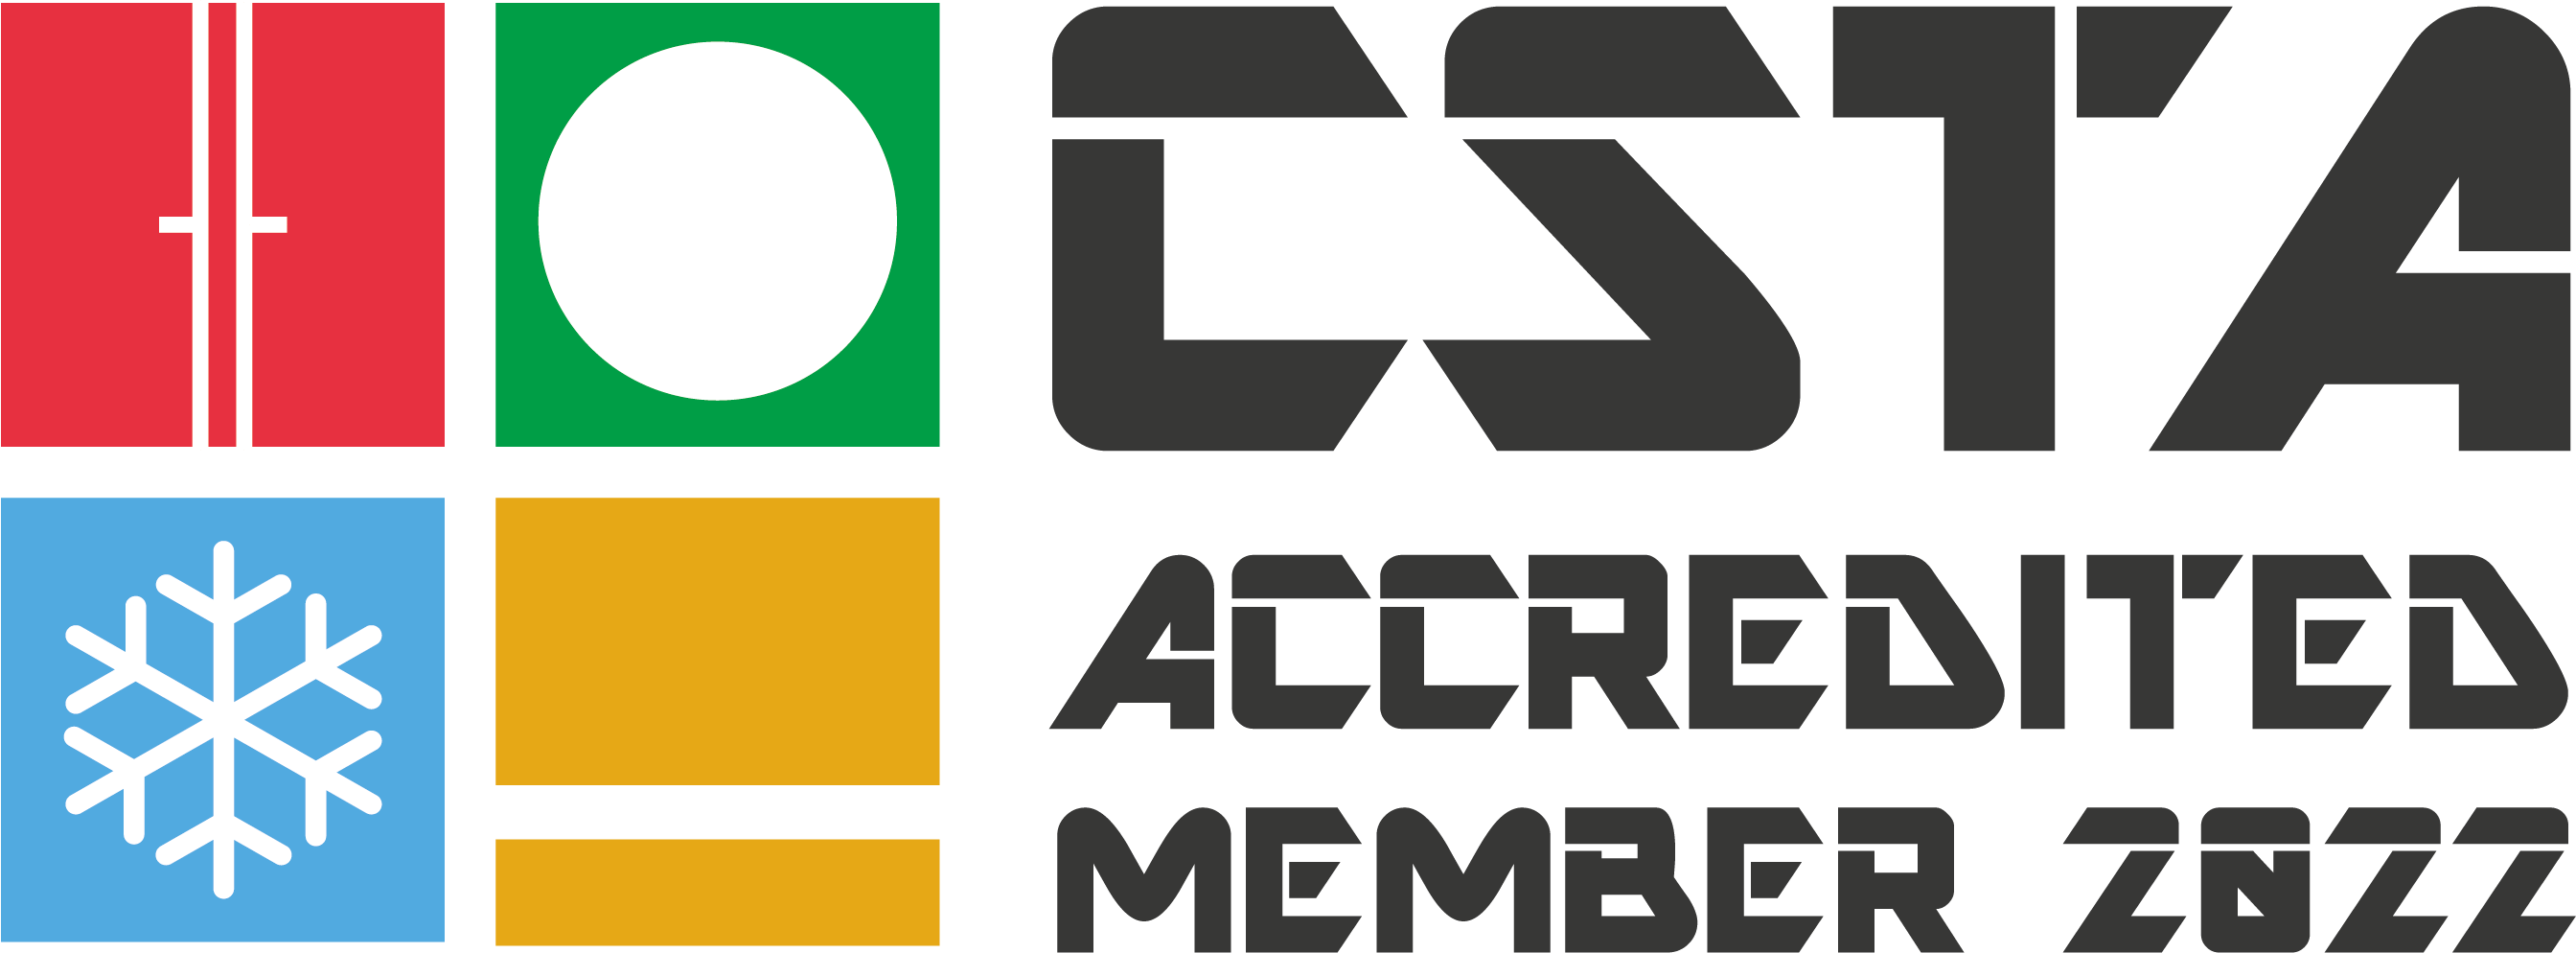 UK-Official membership